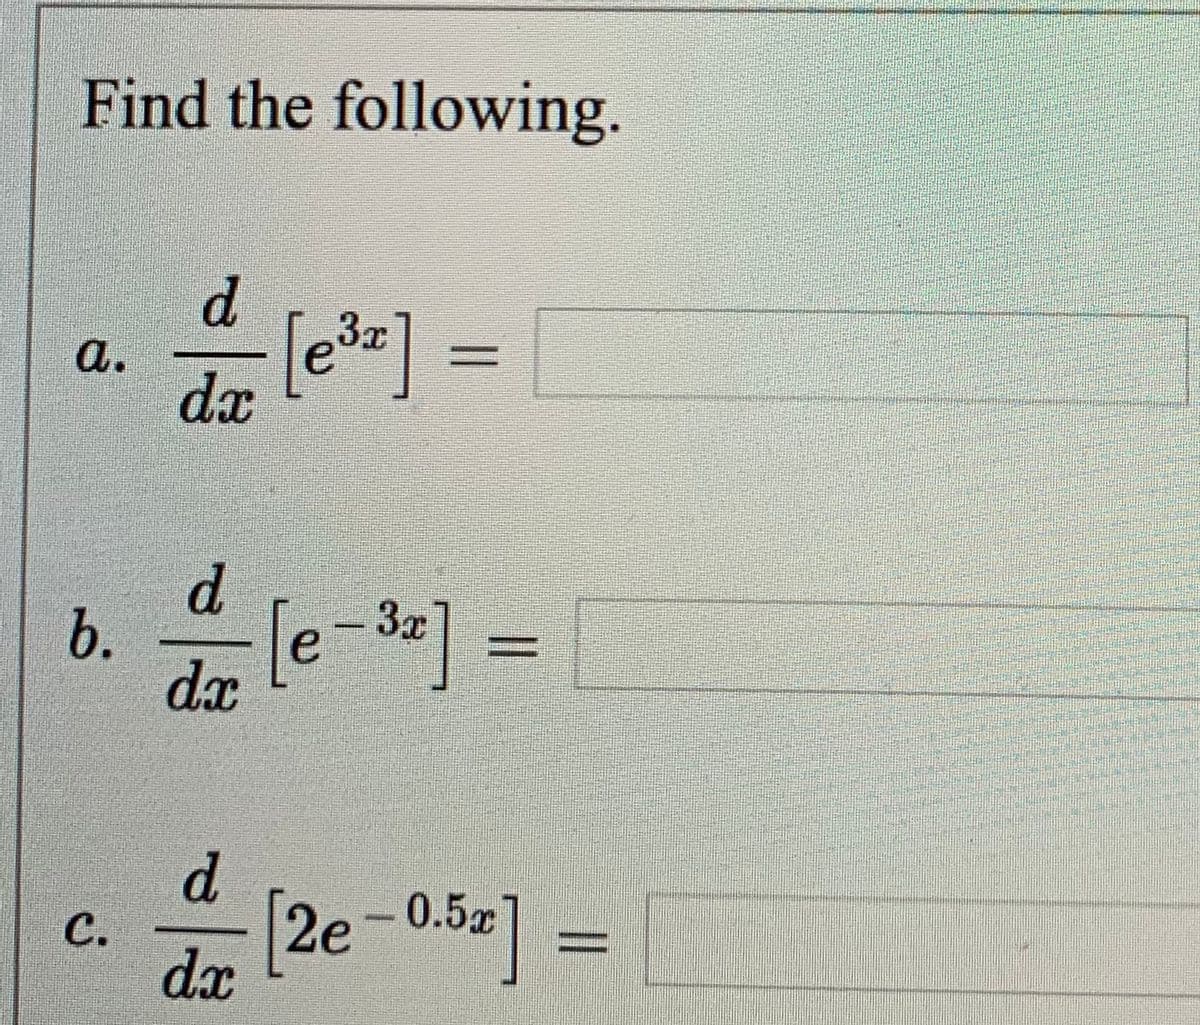 Find the following.
d.
[e]
%3D
а.
dx
d.
b.
dx
[e-3=] =
d.
0.5x
с.
dx
6.
